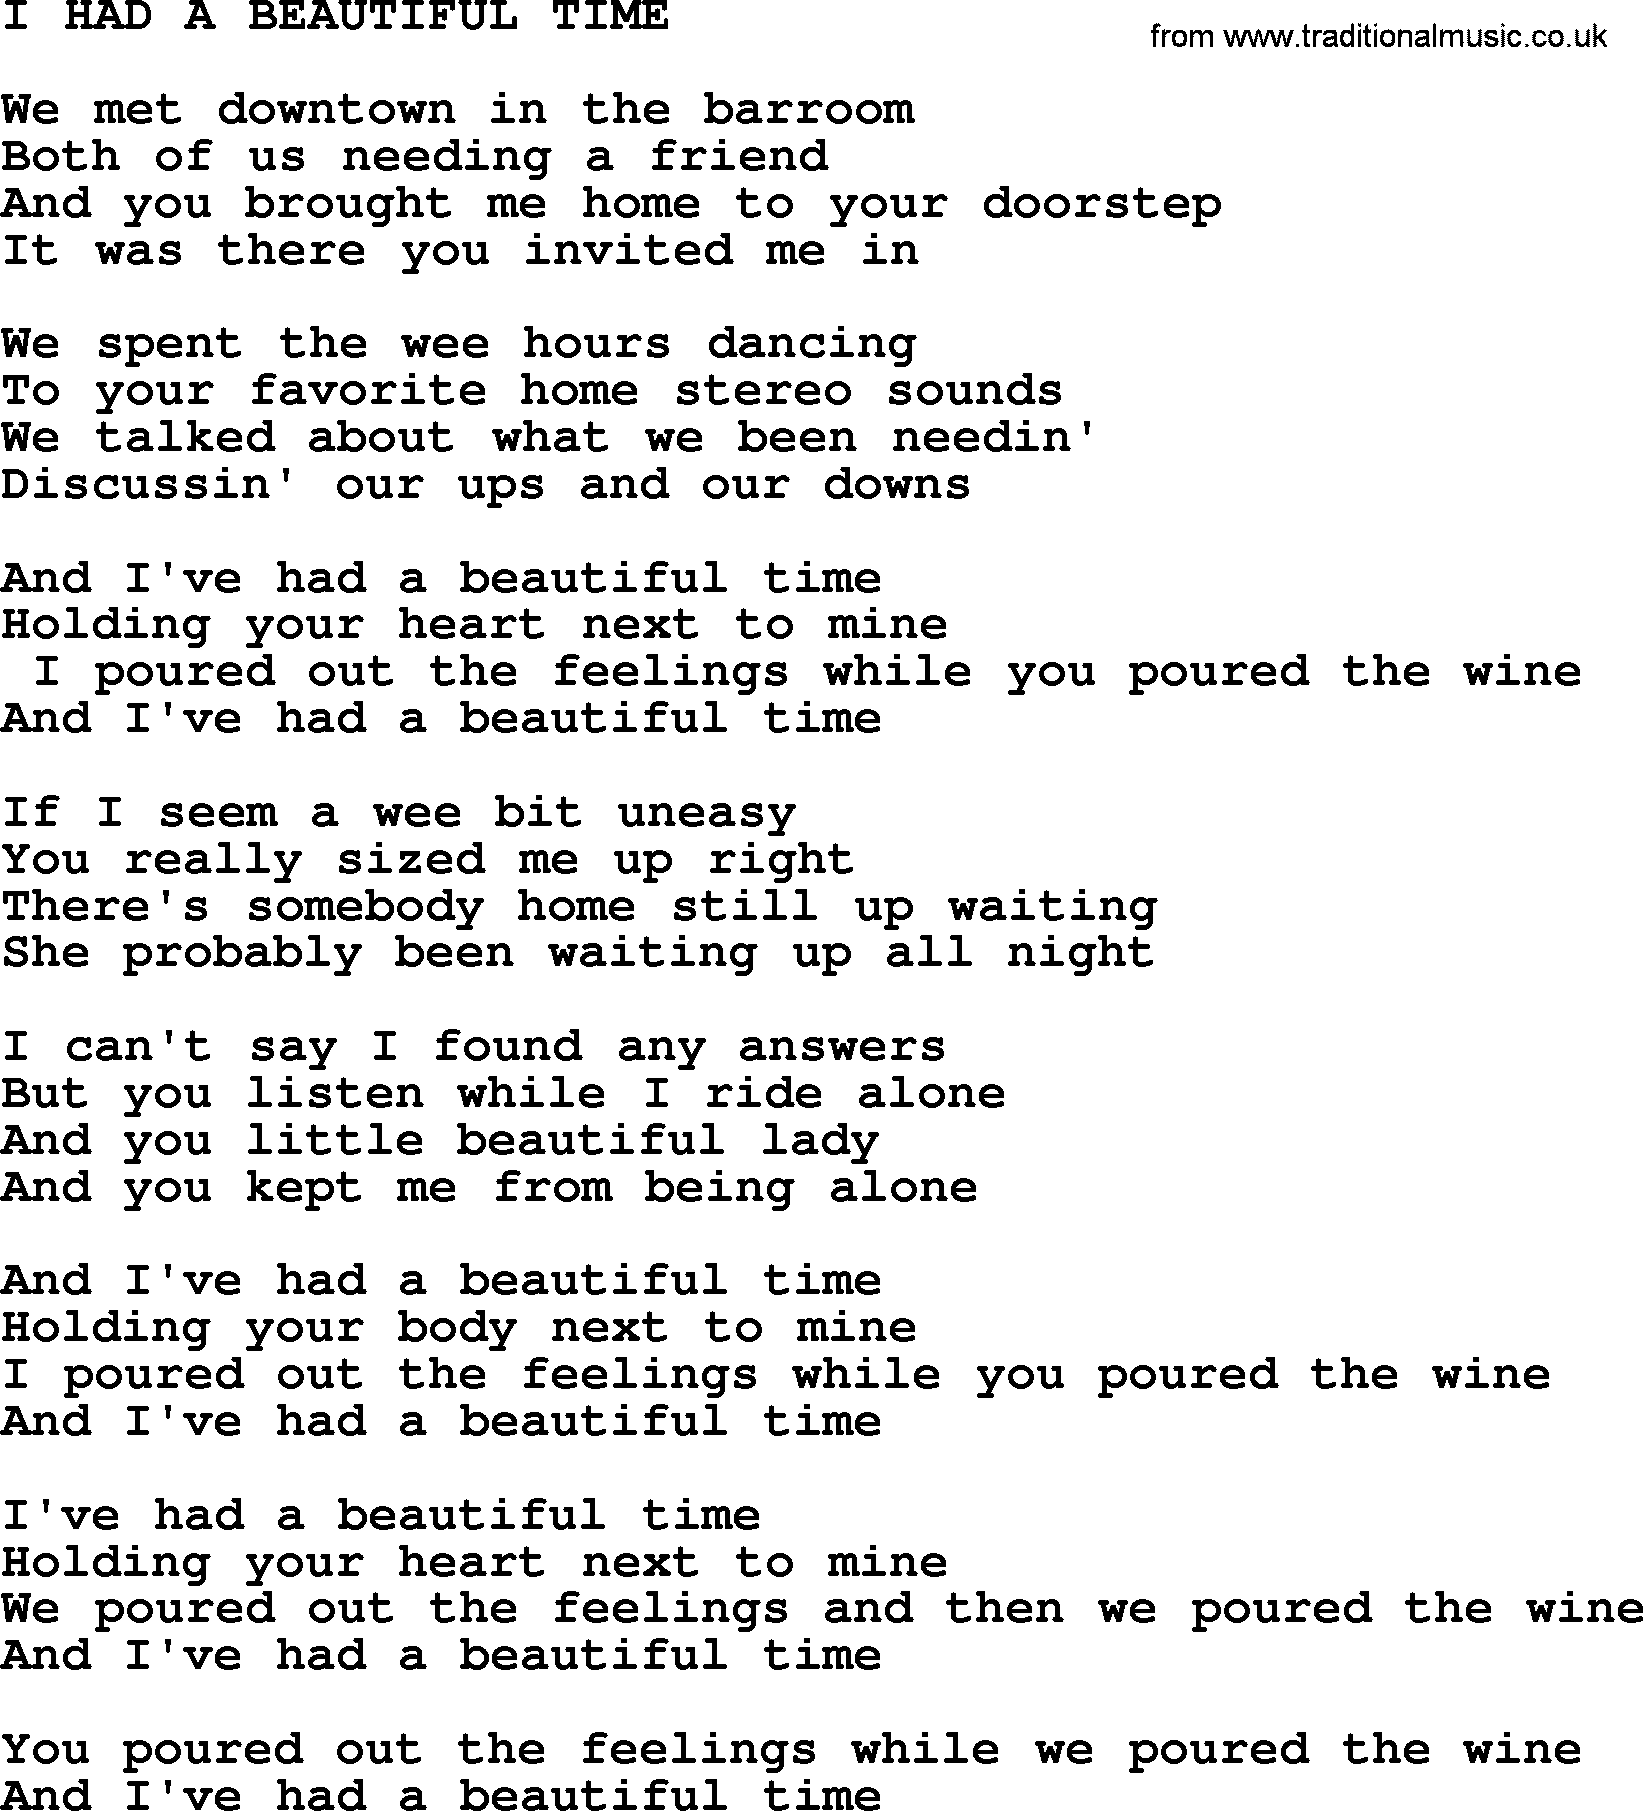 Merle Haggard song: I Had A Beautiful Time, lyrics.